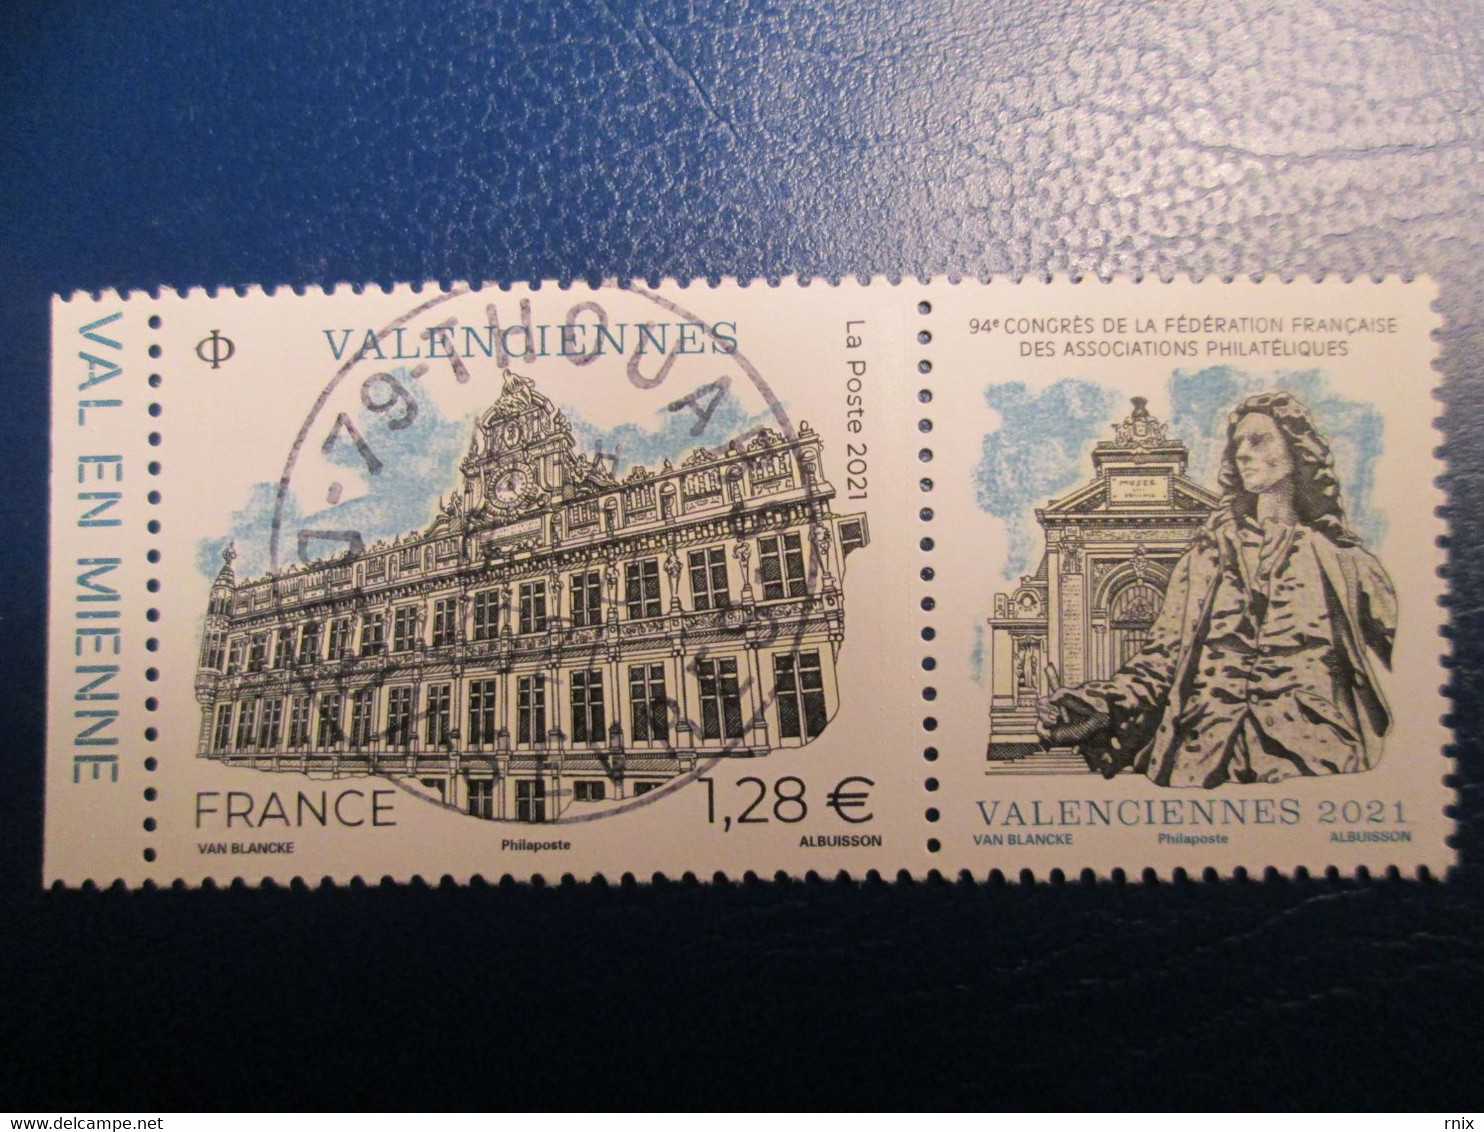 2021 Valenciennes Congrès FFAP Oblitéré Premier Jour Cachet Rond 08/10/2021 - Used Stamps